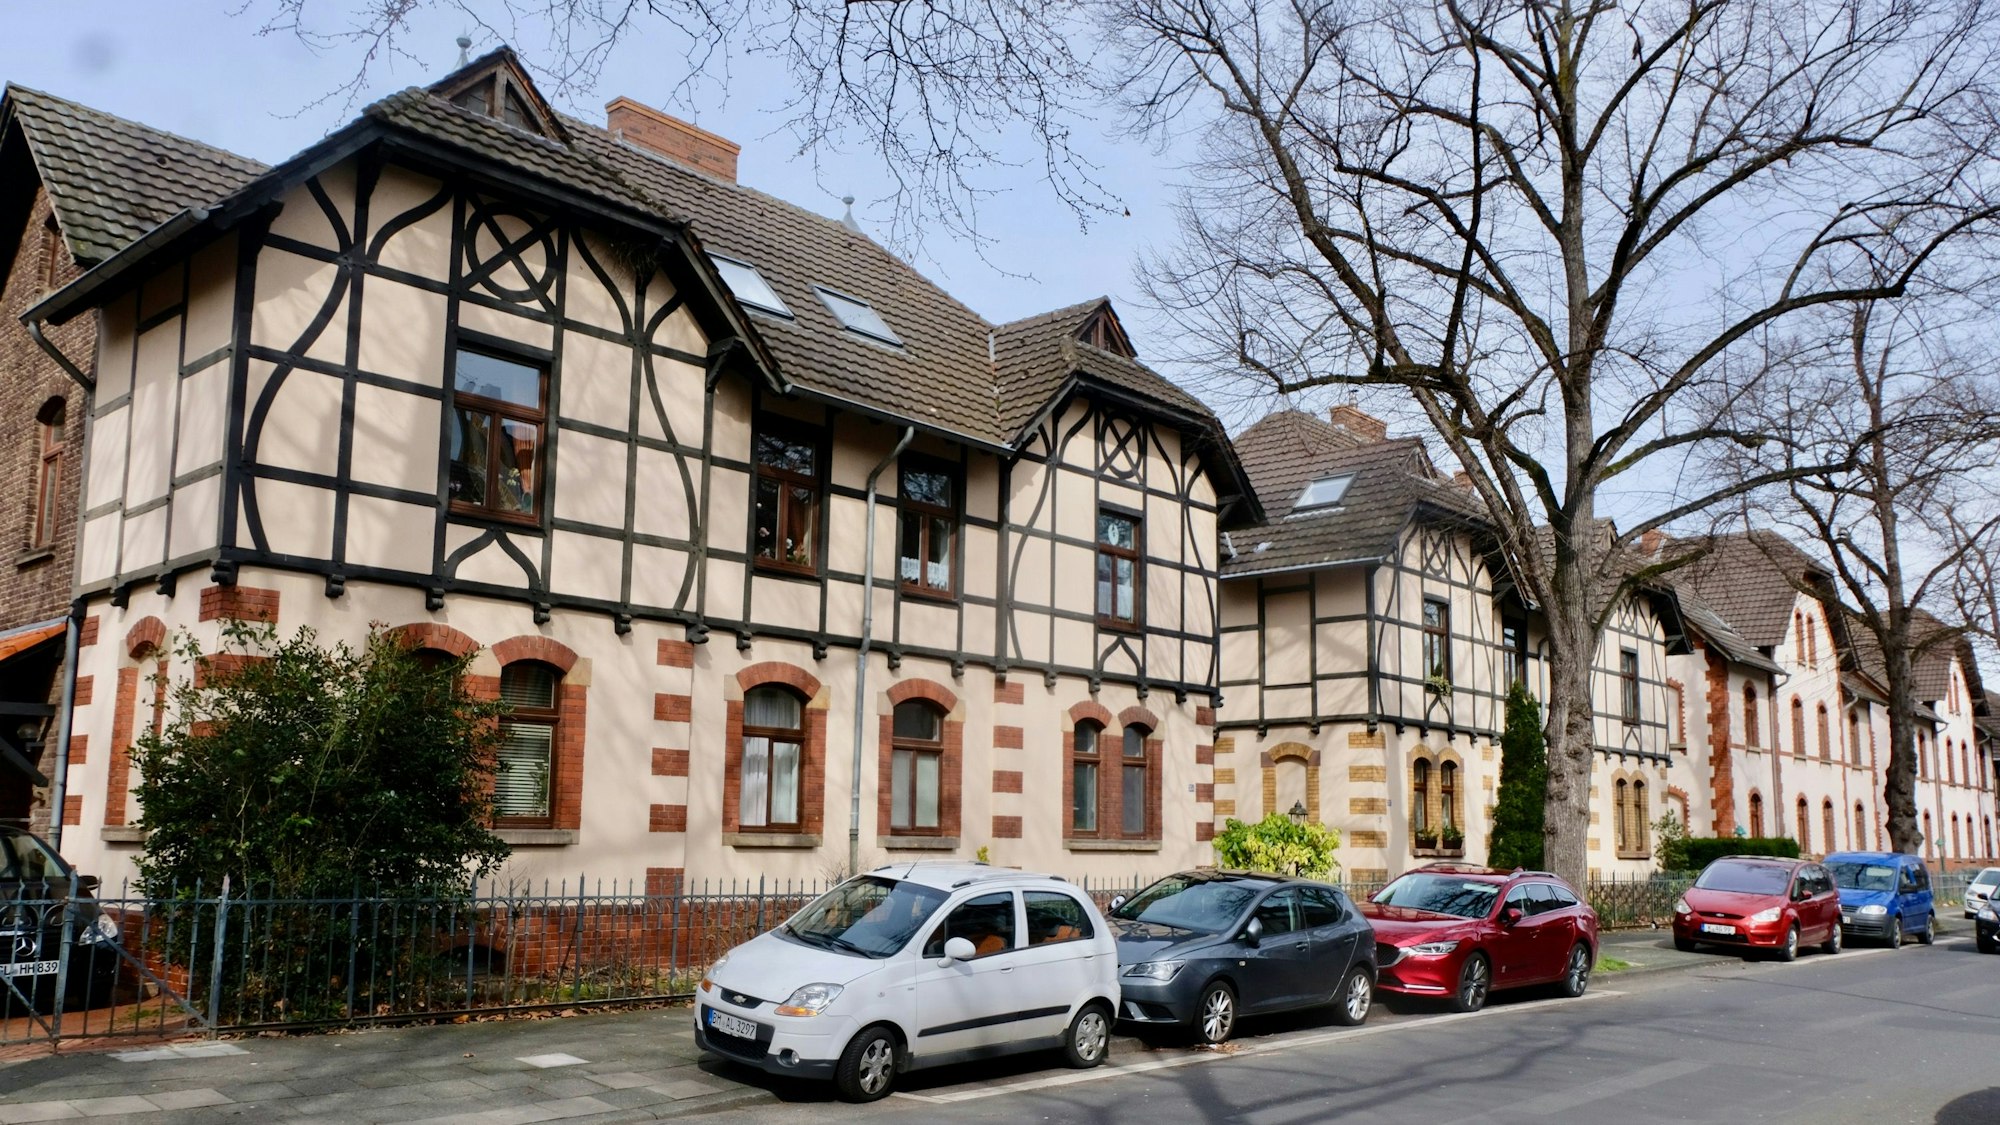 Alte Häuser in Müngersdorf mit Autos, die auf der Straße davor parken.